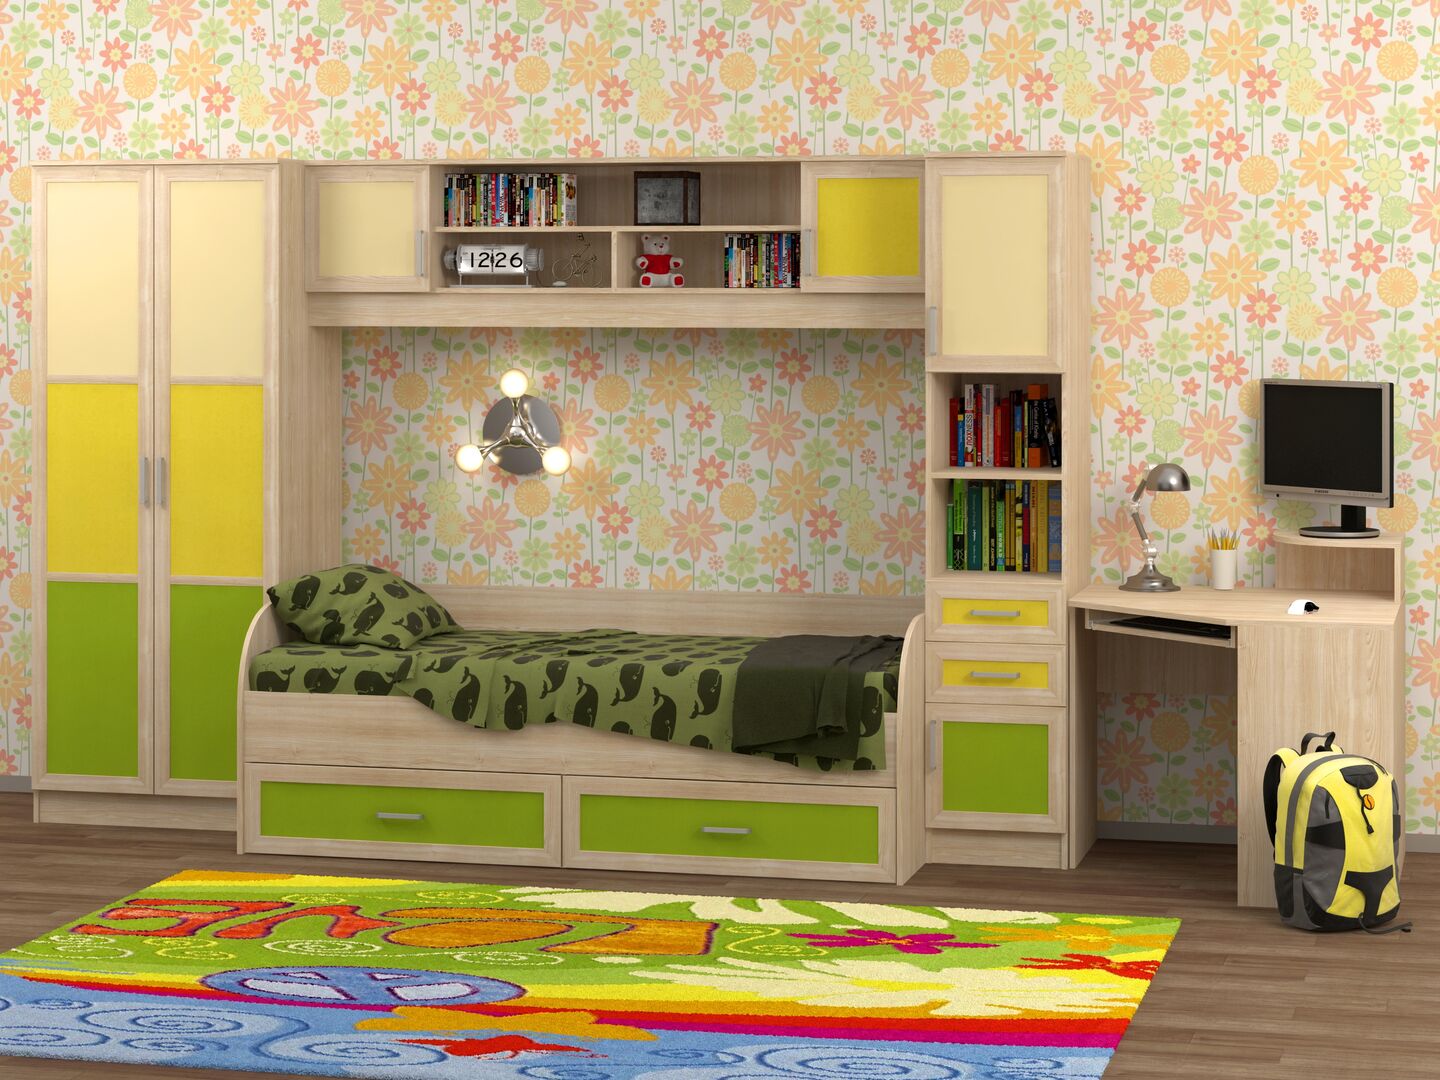 Комплект мебели для детской комнаты фабрики Стиль Белоснежка-2